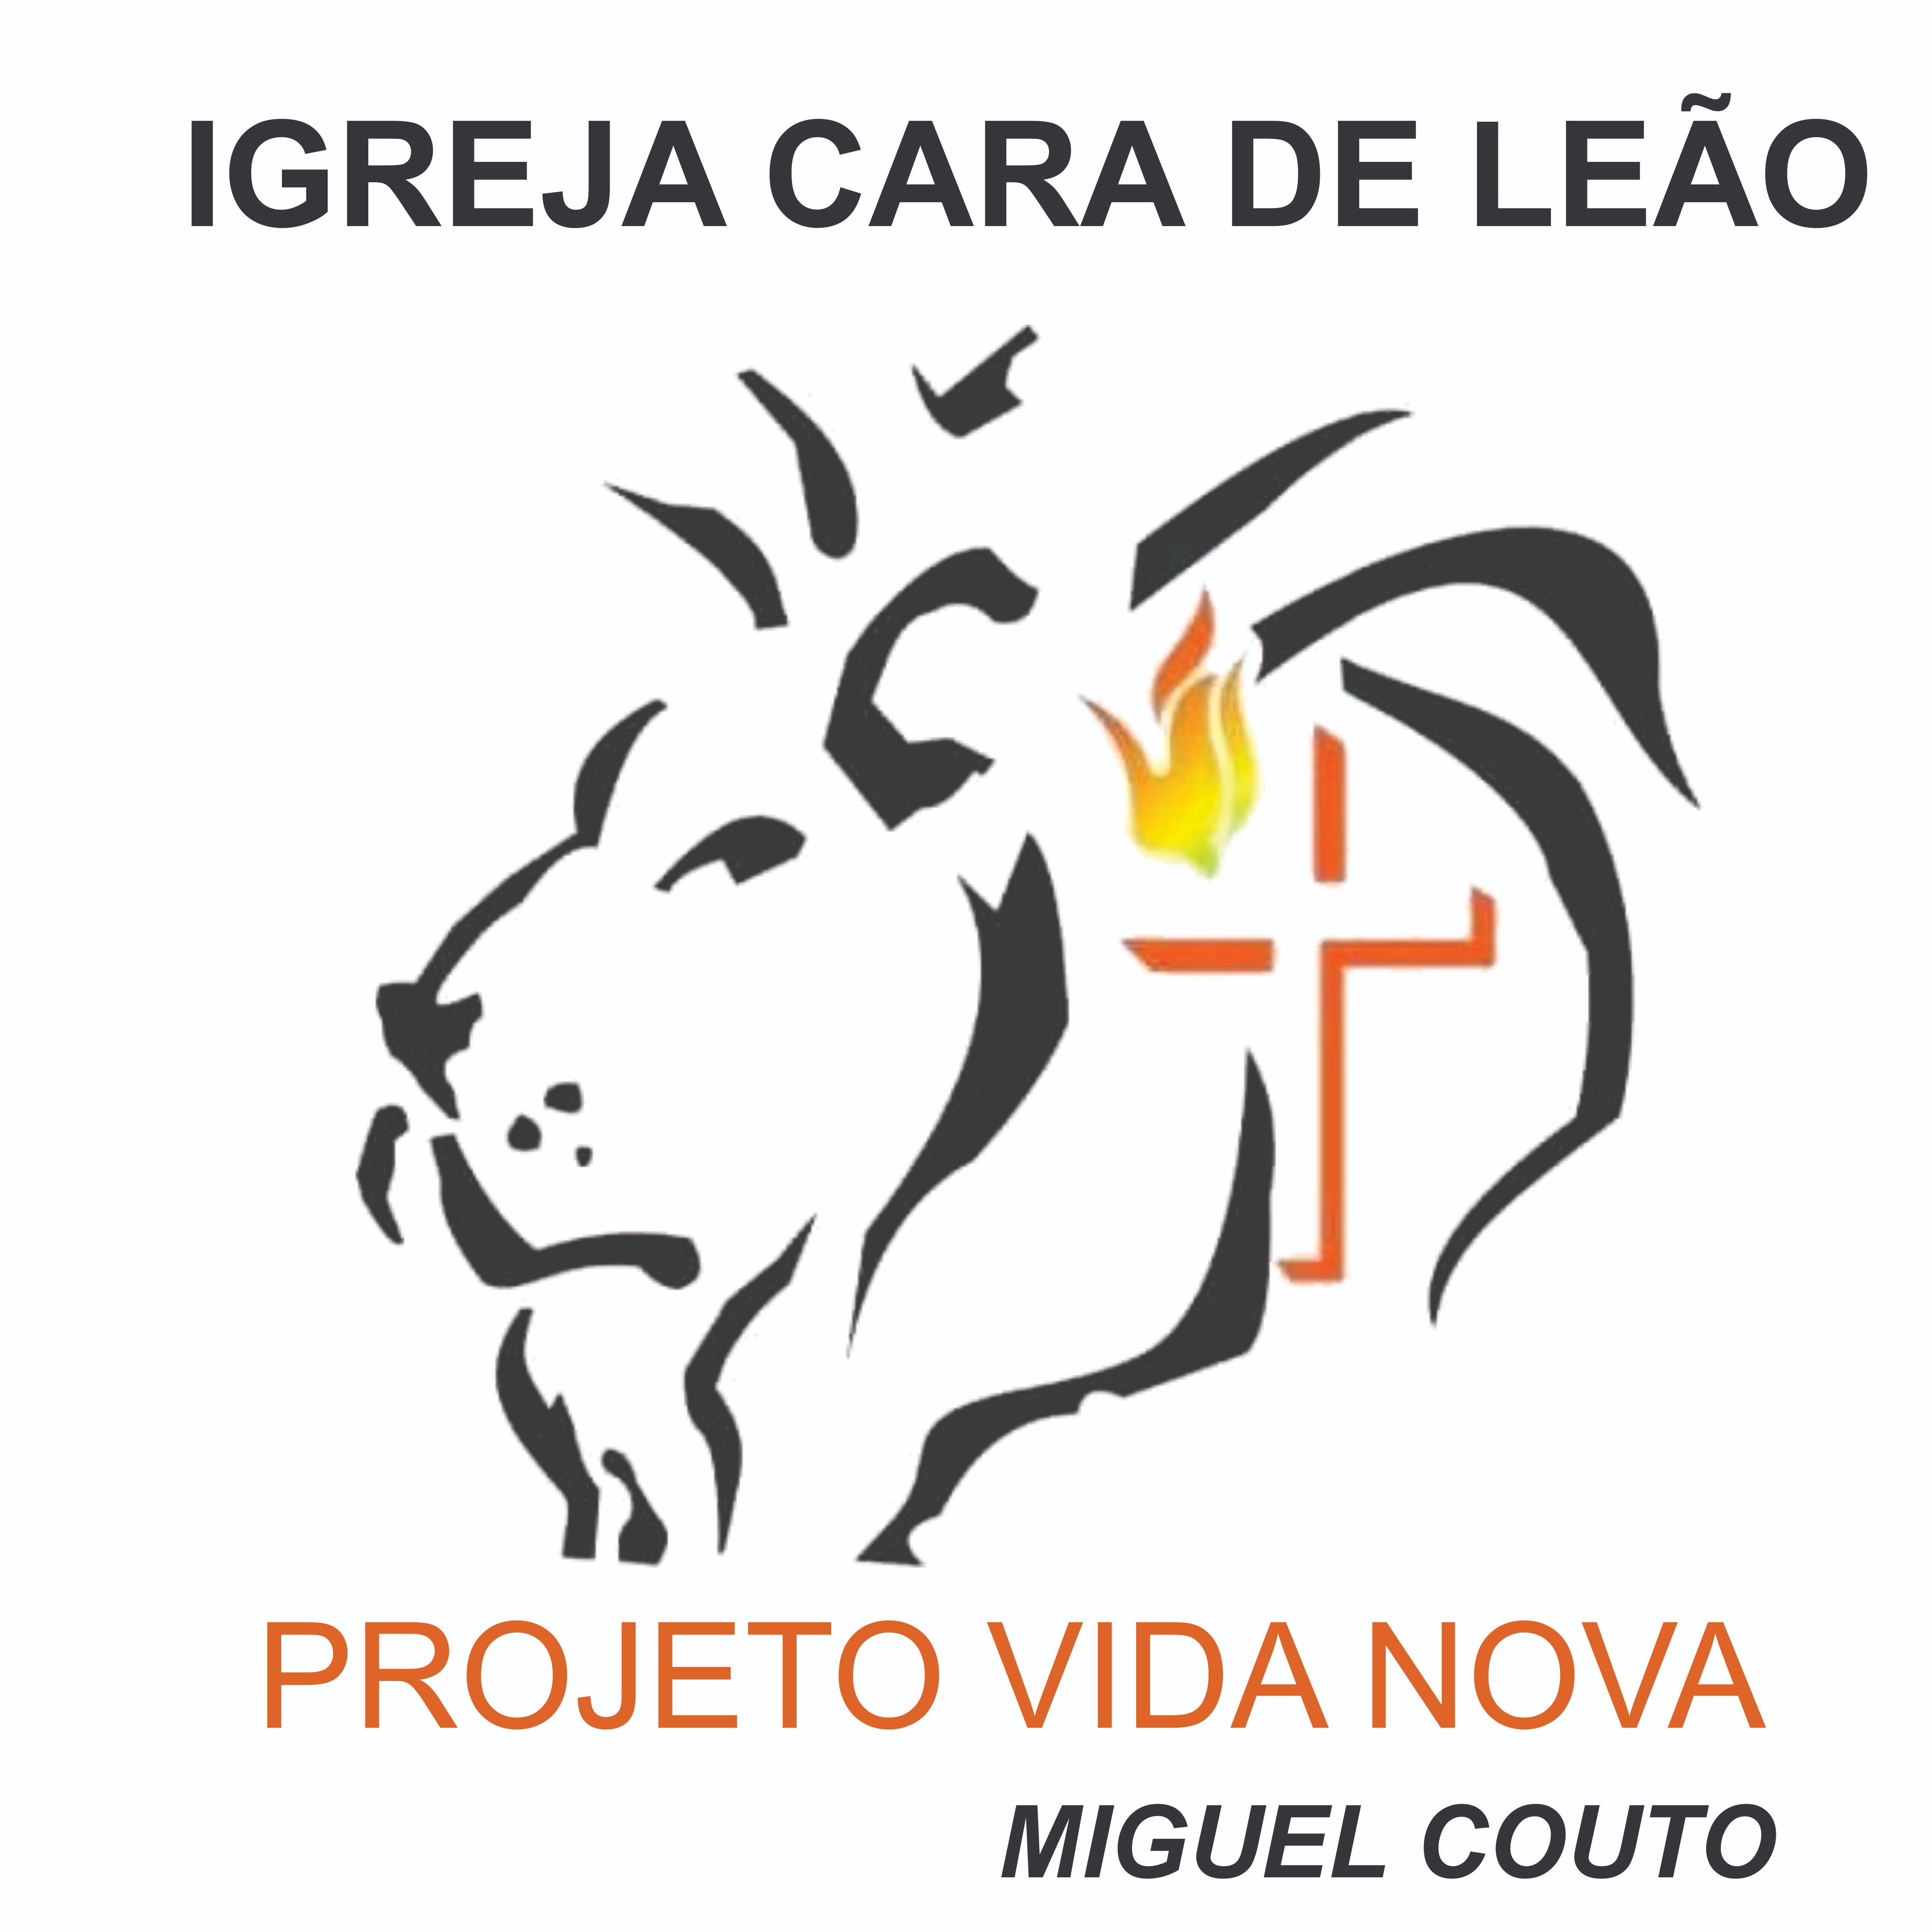 Igreja Cara de Leão - Miguel Couto